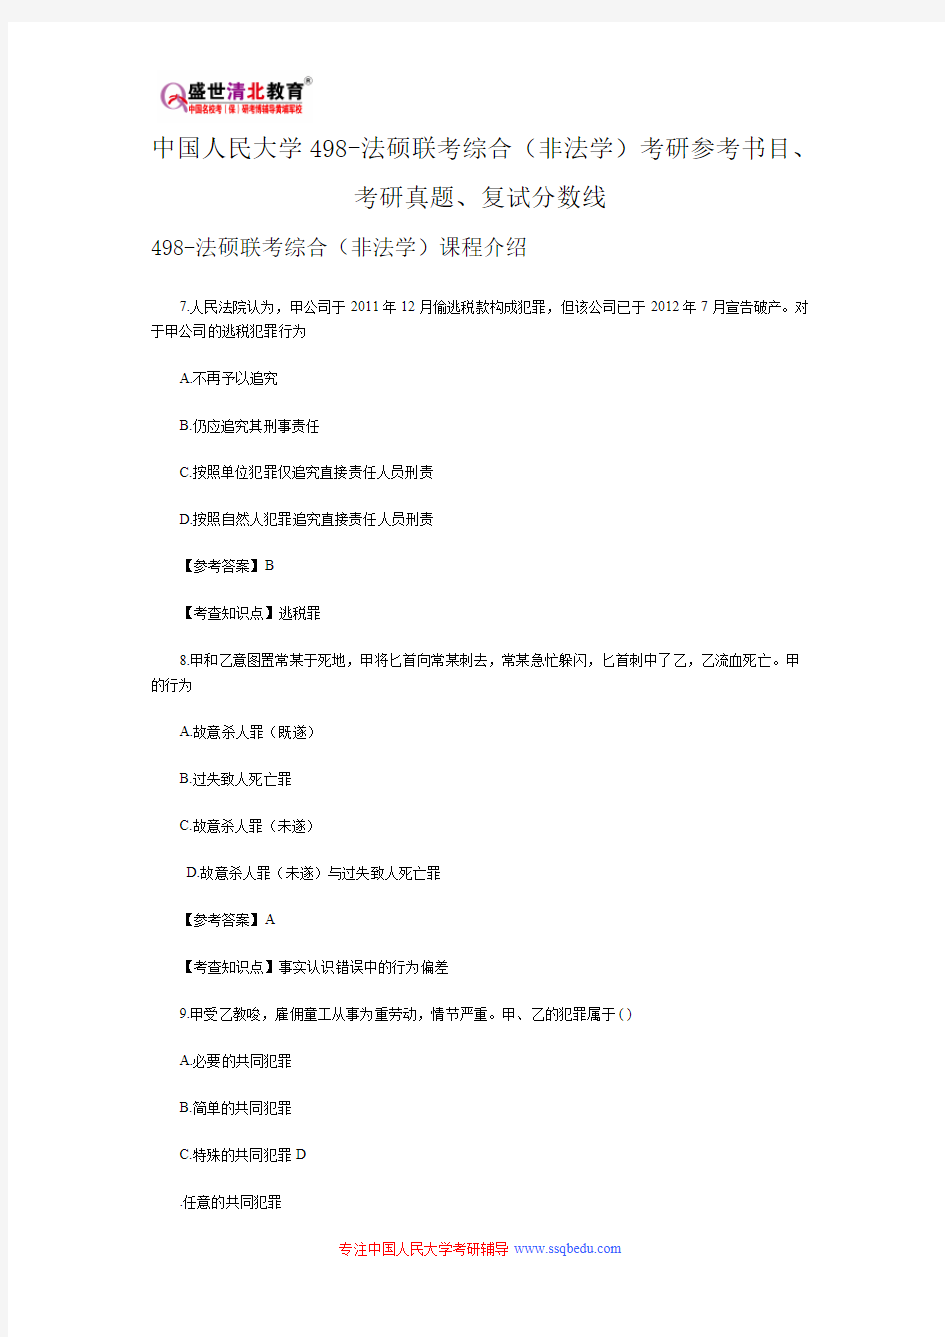 中国人民大学498-法硕联考综合(非法学)考研参考书目、考研真题、复试分数线